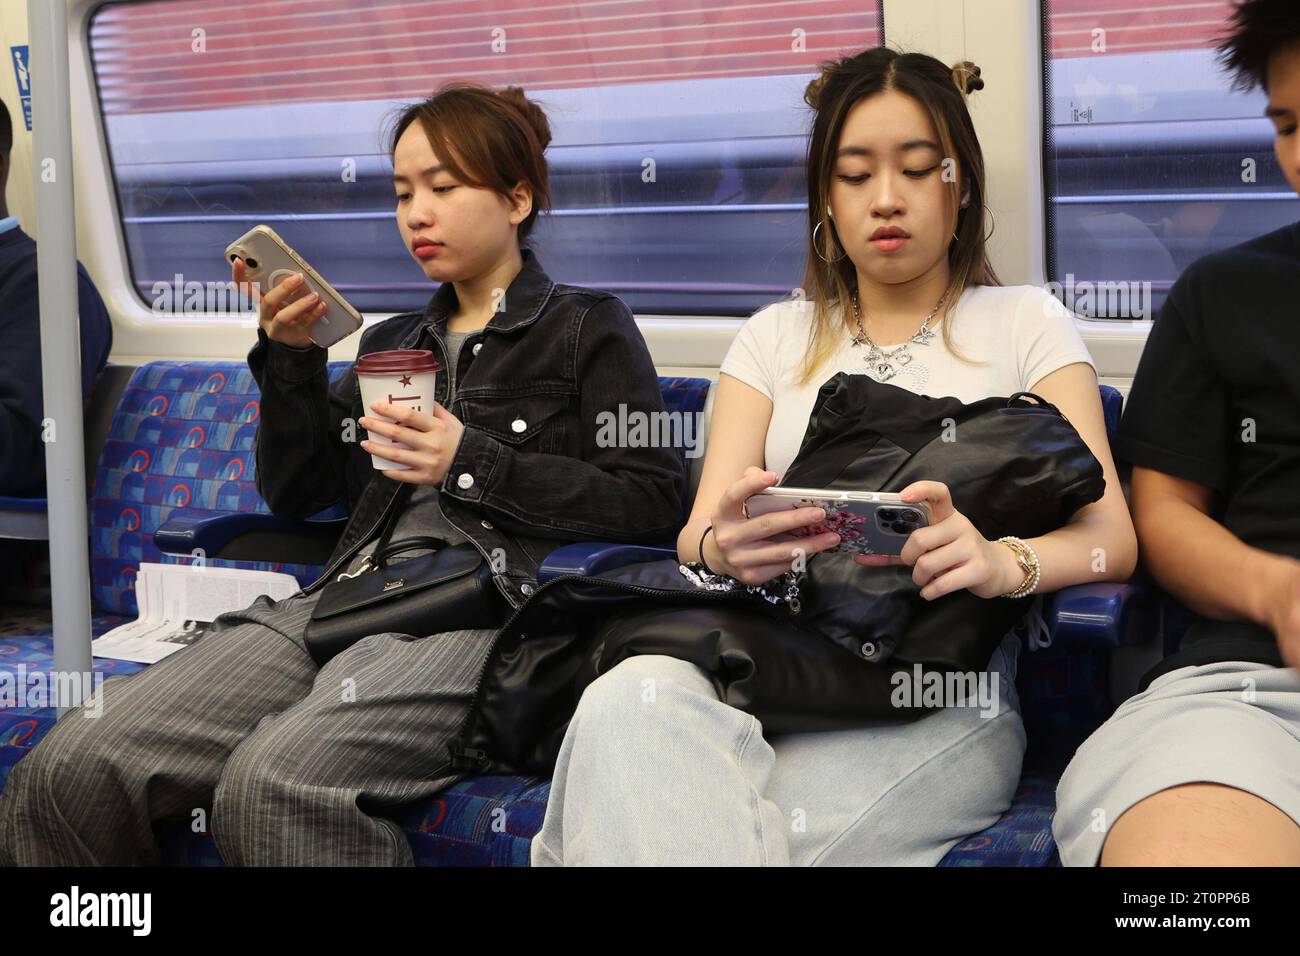 Frauen schauen auf ihre Smartphones, während sie in der Londoner U-Bahn reisen Stockfoto